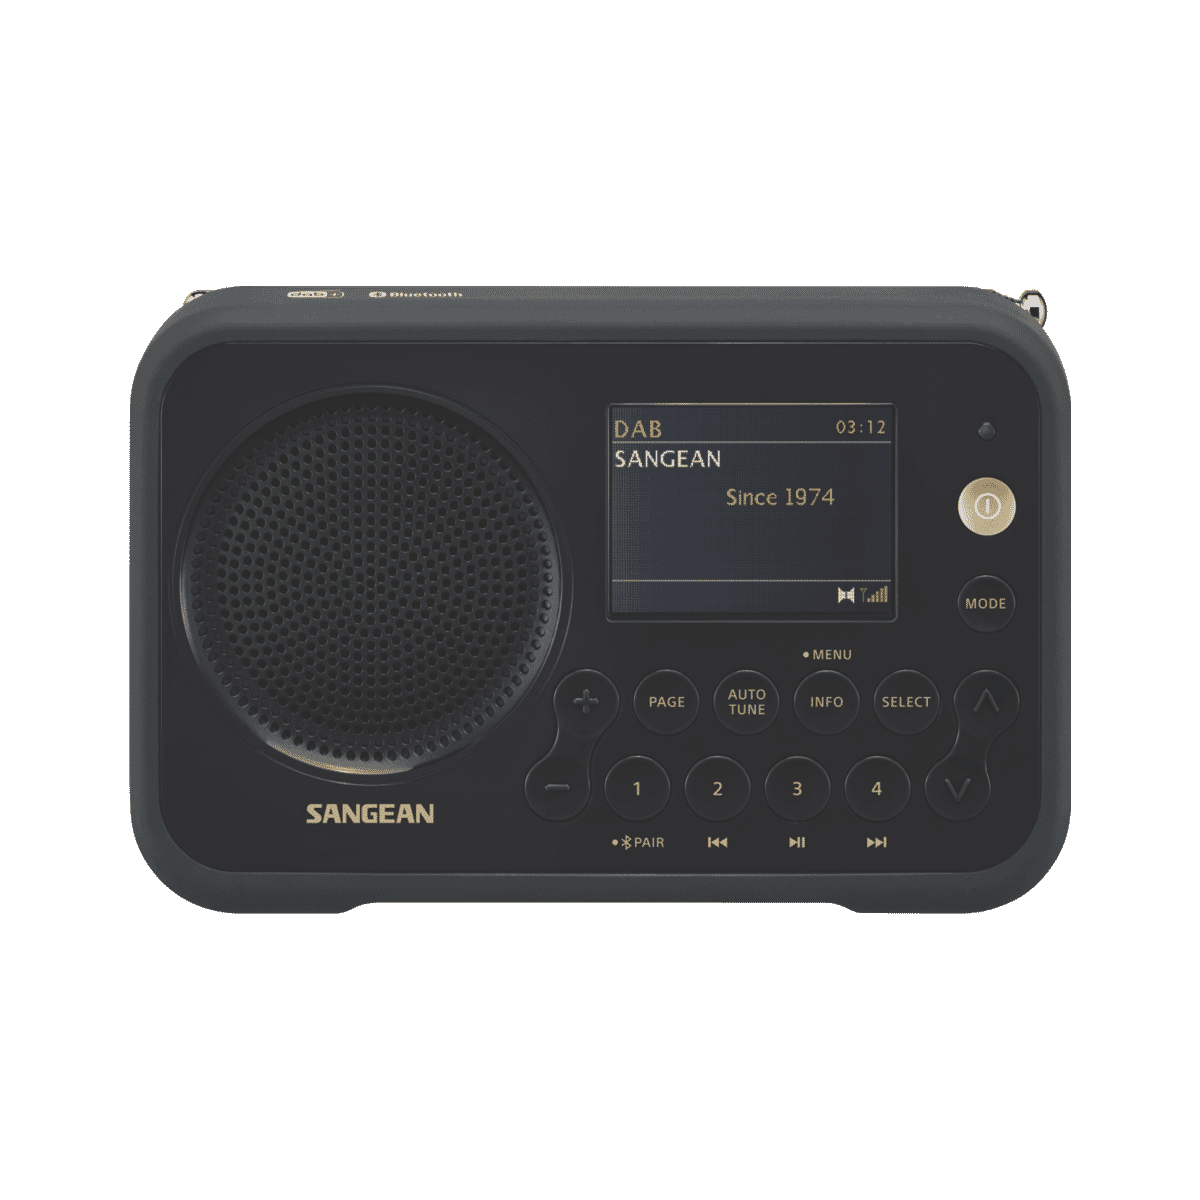 DPR-76BT DAB+/FM/Bluetooth Digital Radio│SANGEAN Electronics